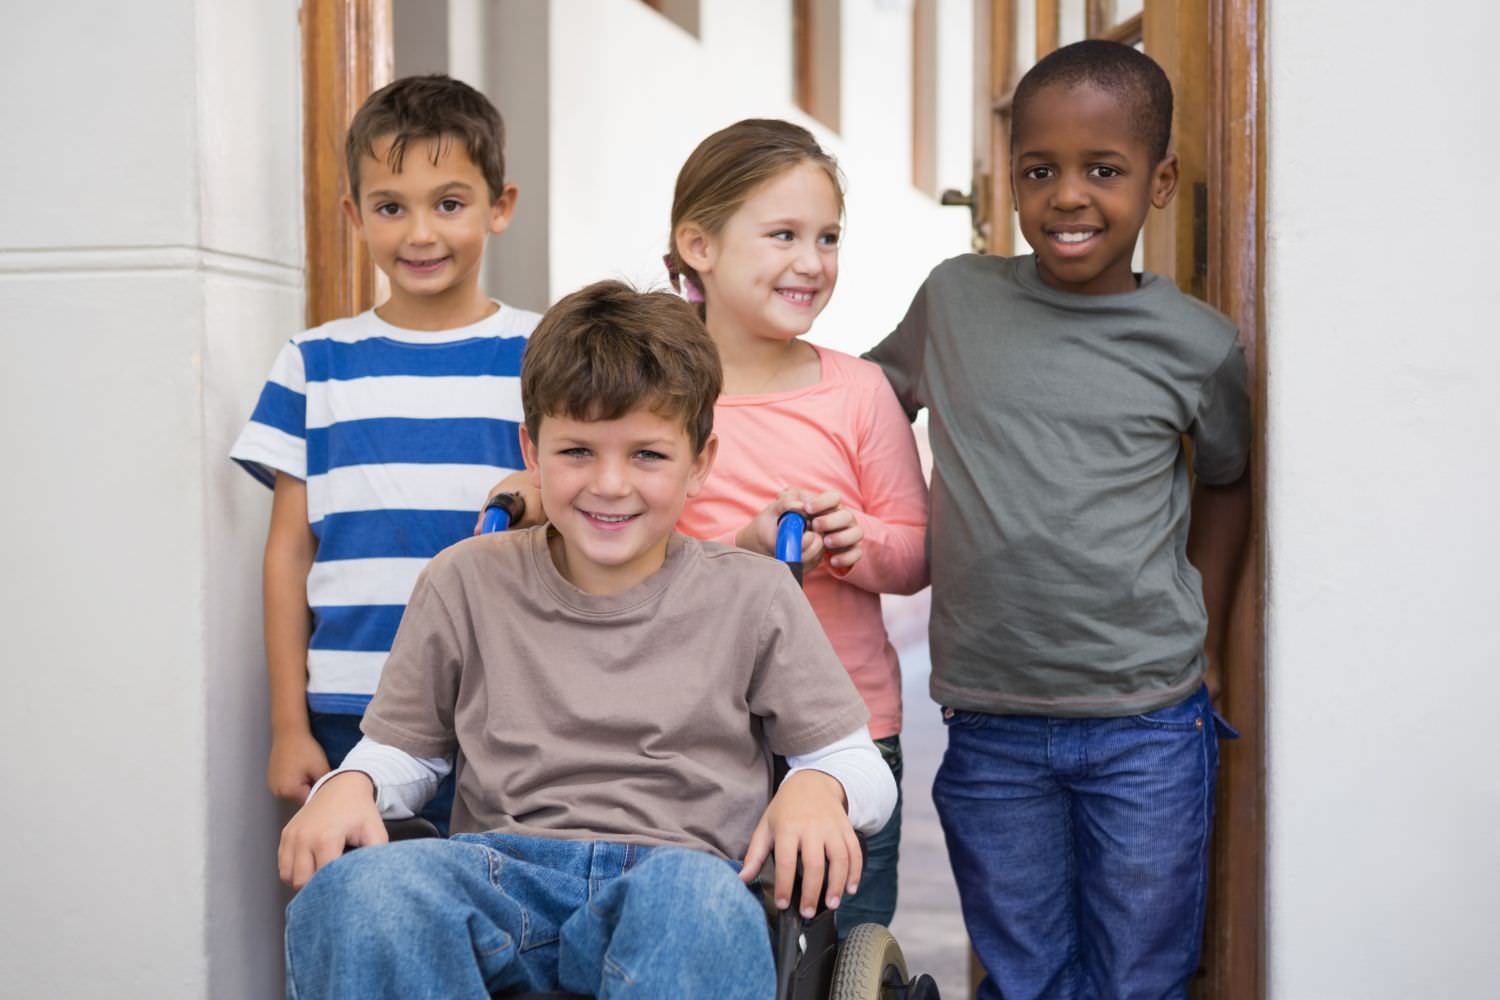 Bild zeigt: Drei Kinder unterschiedlicher Herkunft zusammen mit einem Jungen im Rollstuhl